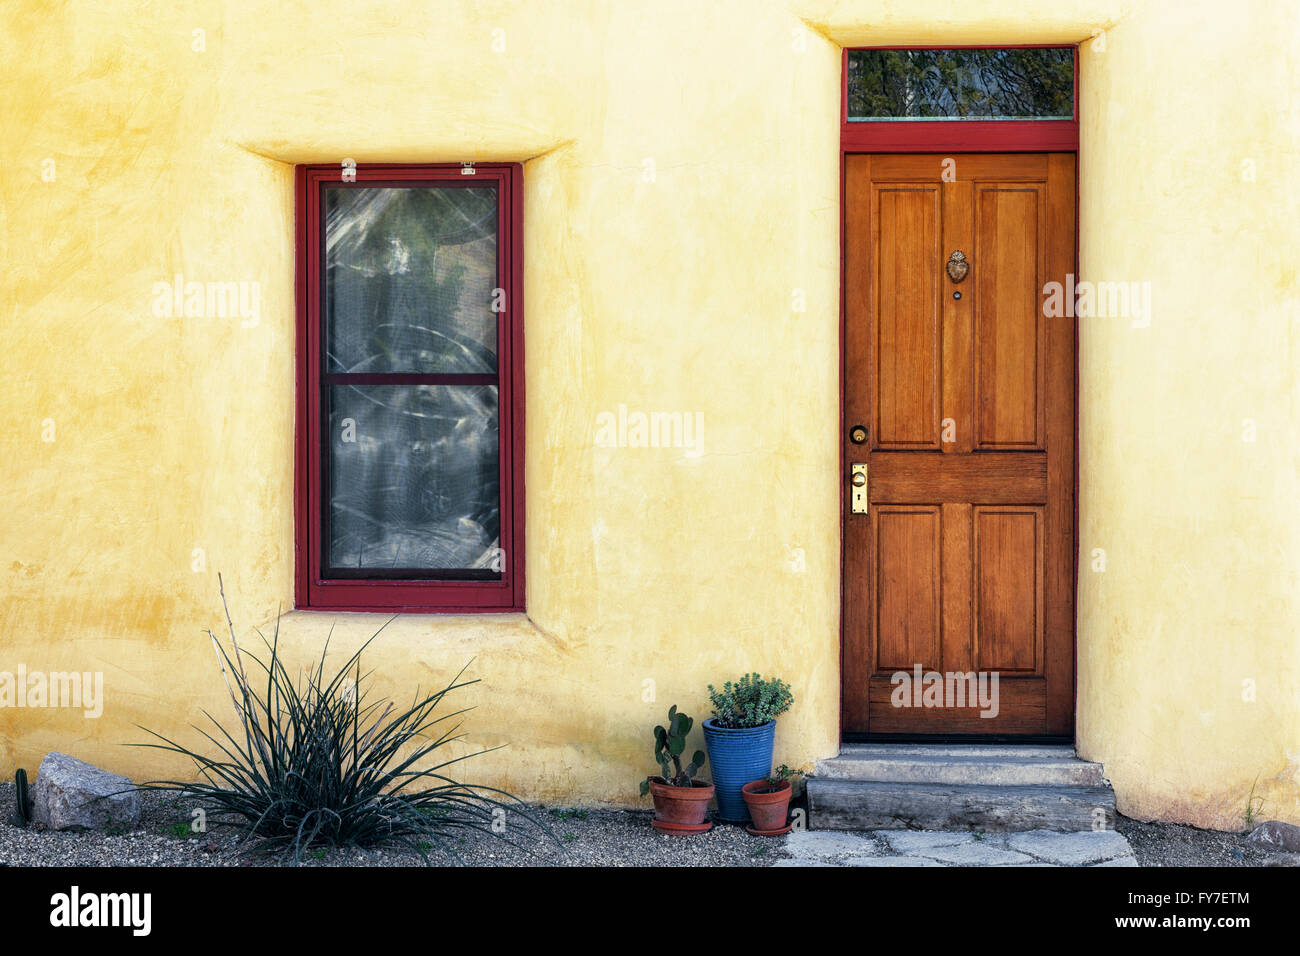 Bunte Architektur einschließlich Türen und Adobe Häusern Make-up viel des Barrio Historic District in Tucson, Arizona. Stockfoto